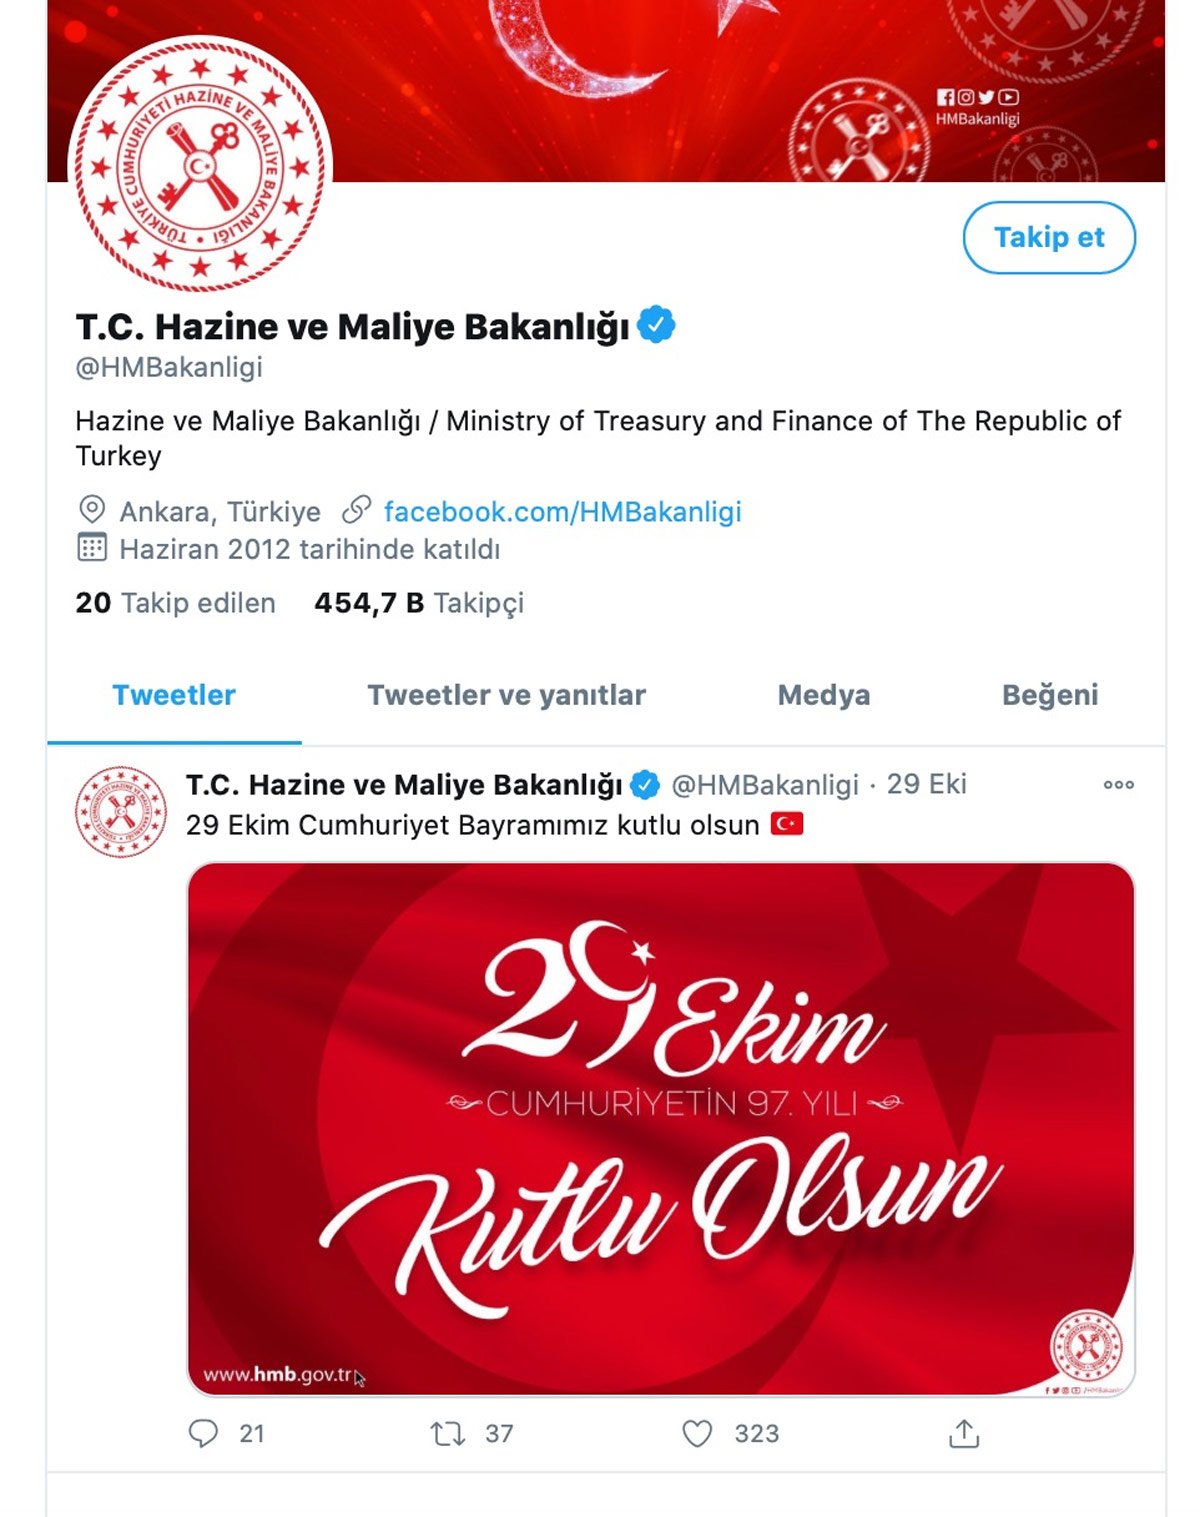 Berat Albayrak’ın istifasının ardından Bakanlığın Twitter hesabında dikkat çeken değişim